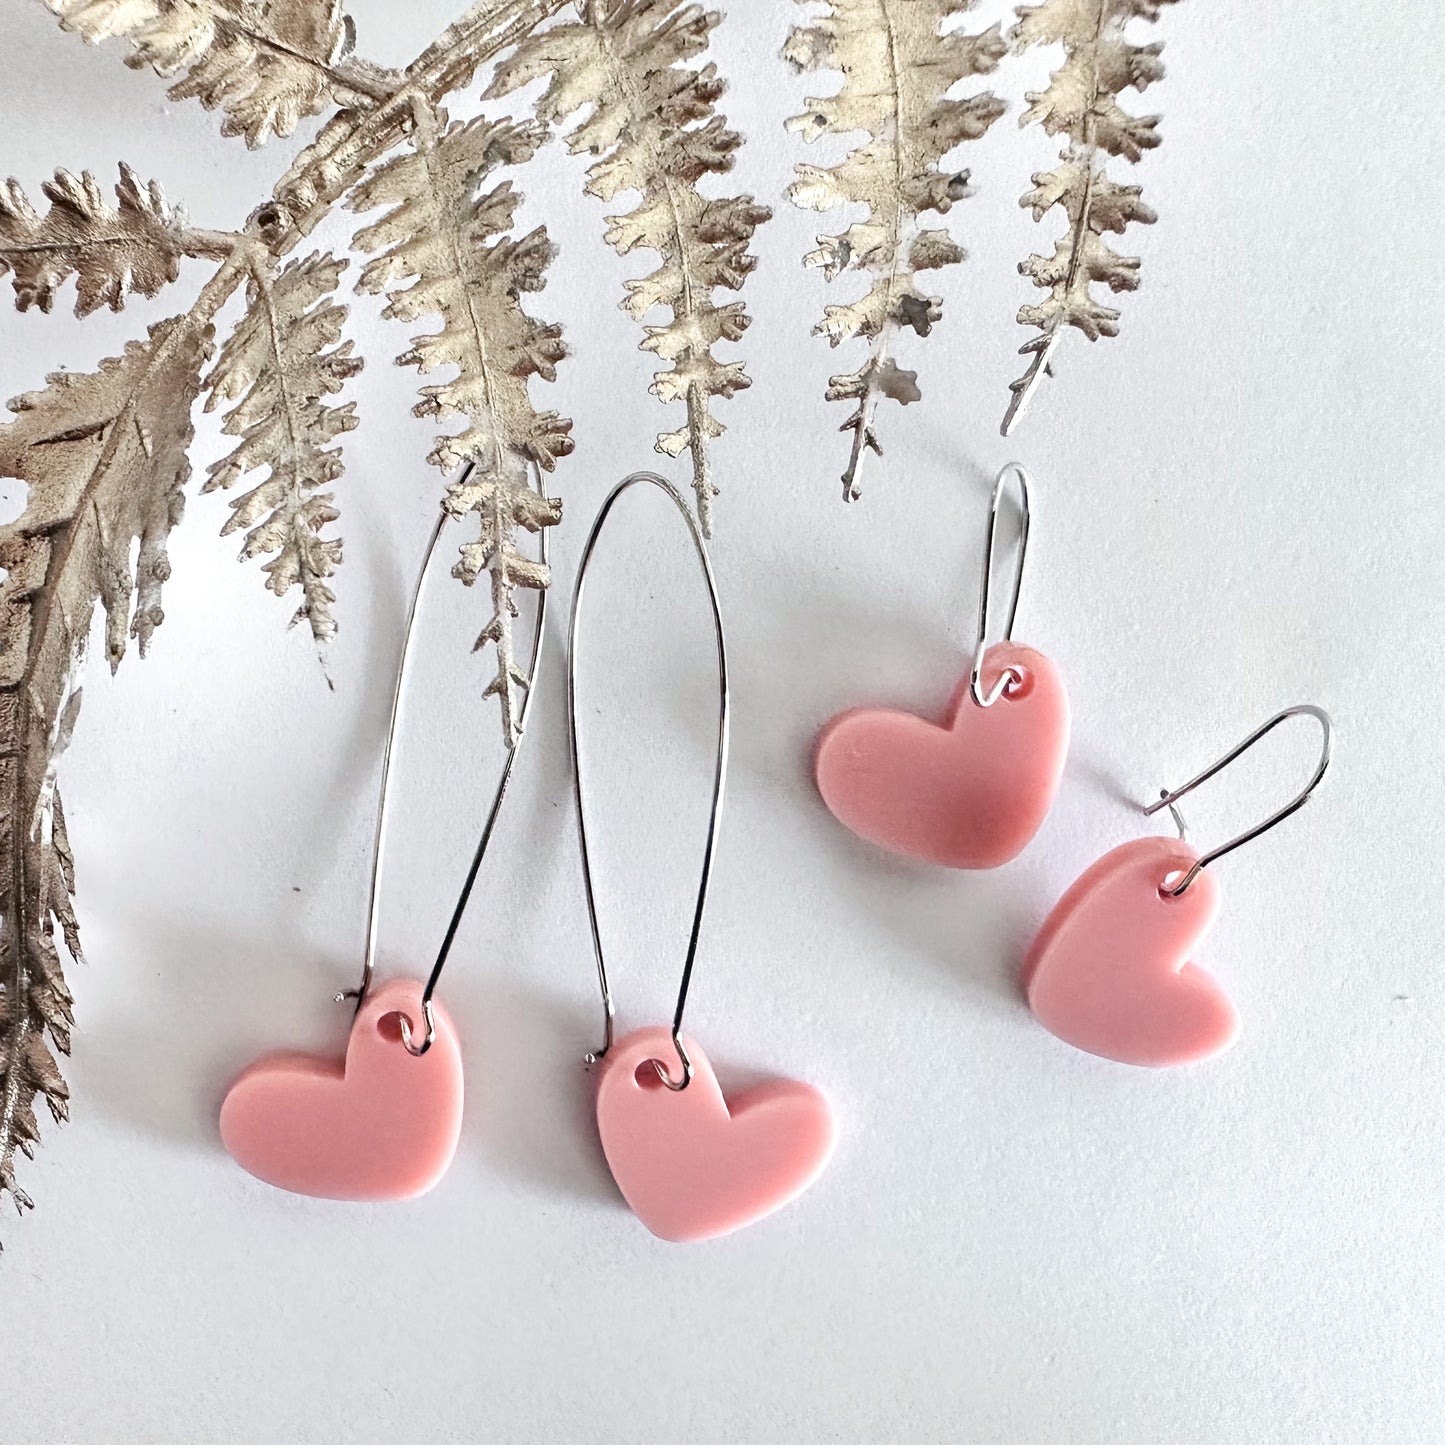 Hanging heart earrings